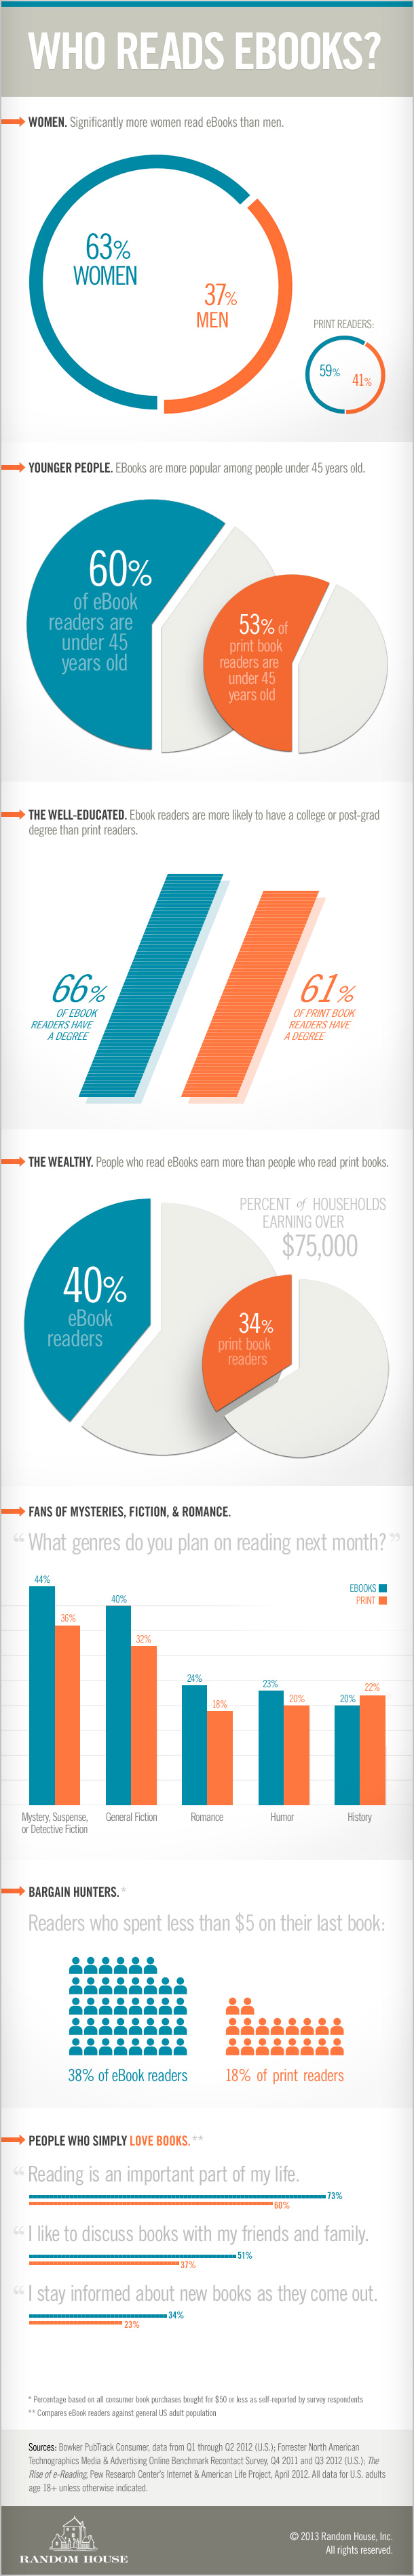 ¿Quién lee libros electrónicos?